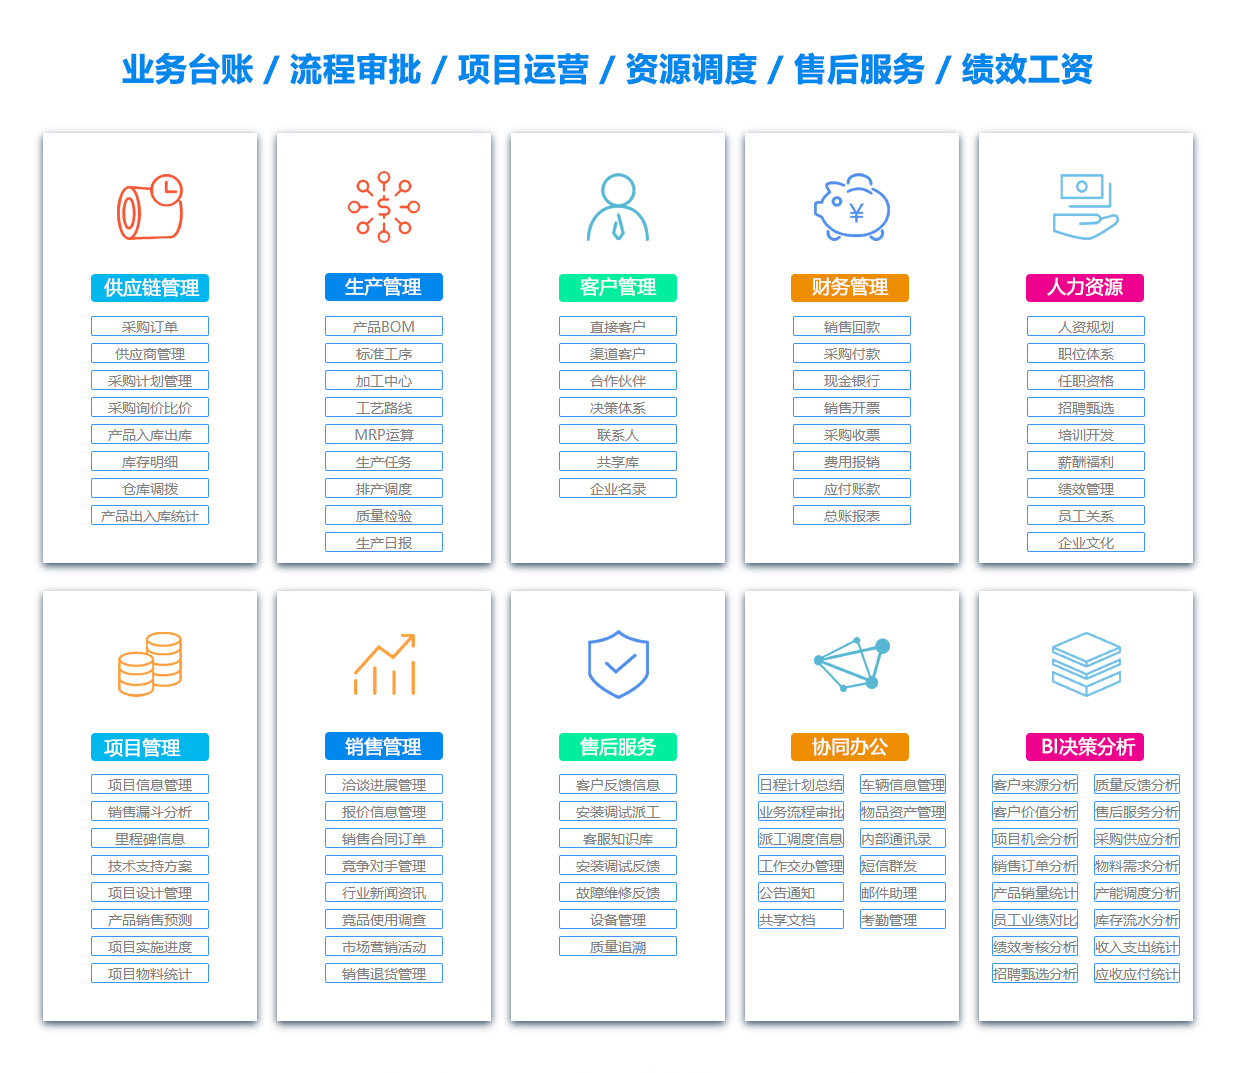 忻州MIS:信息管理系统